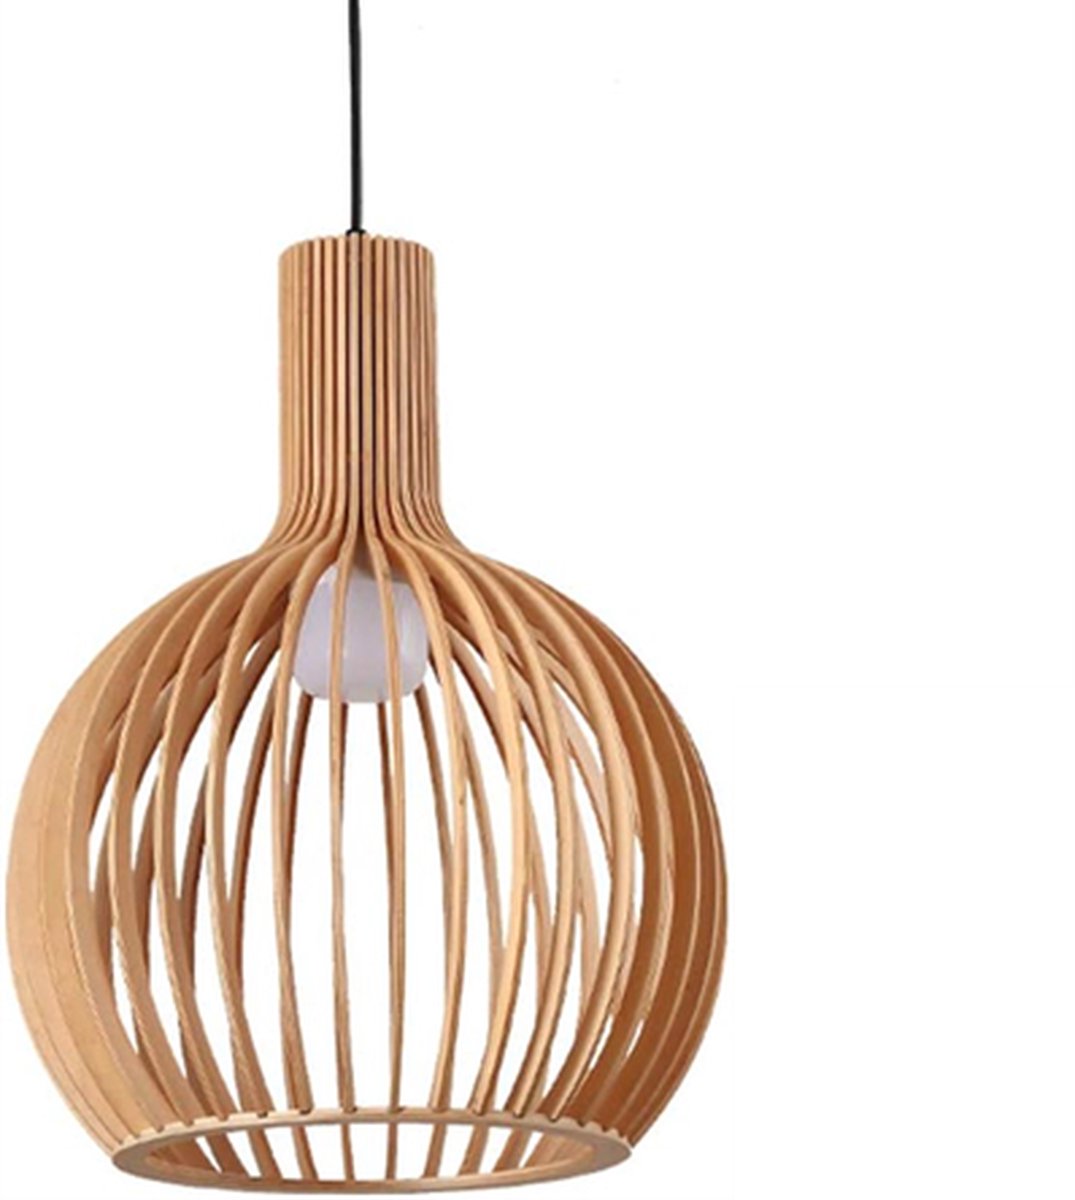 Hanglamp Rosolina - Handgemaakt - Bamboe - Rotan - Ø23cm - Inclusief lichtbron - Chique - Natuurlijke uitstraling